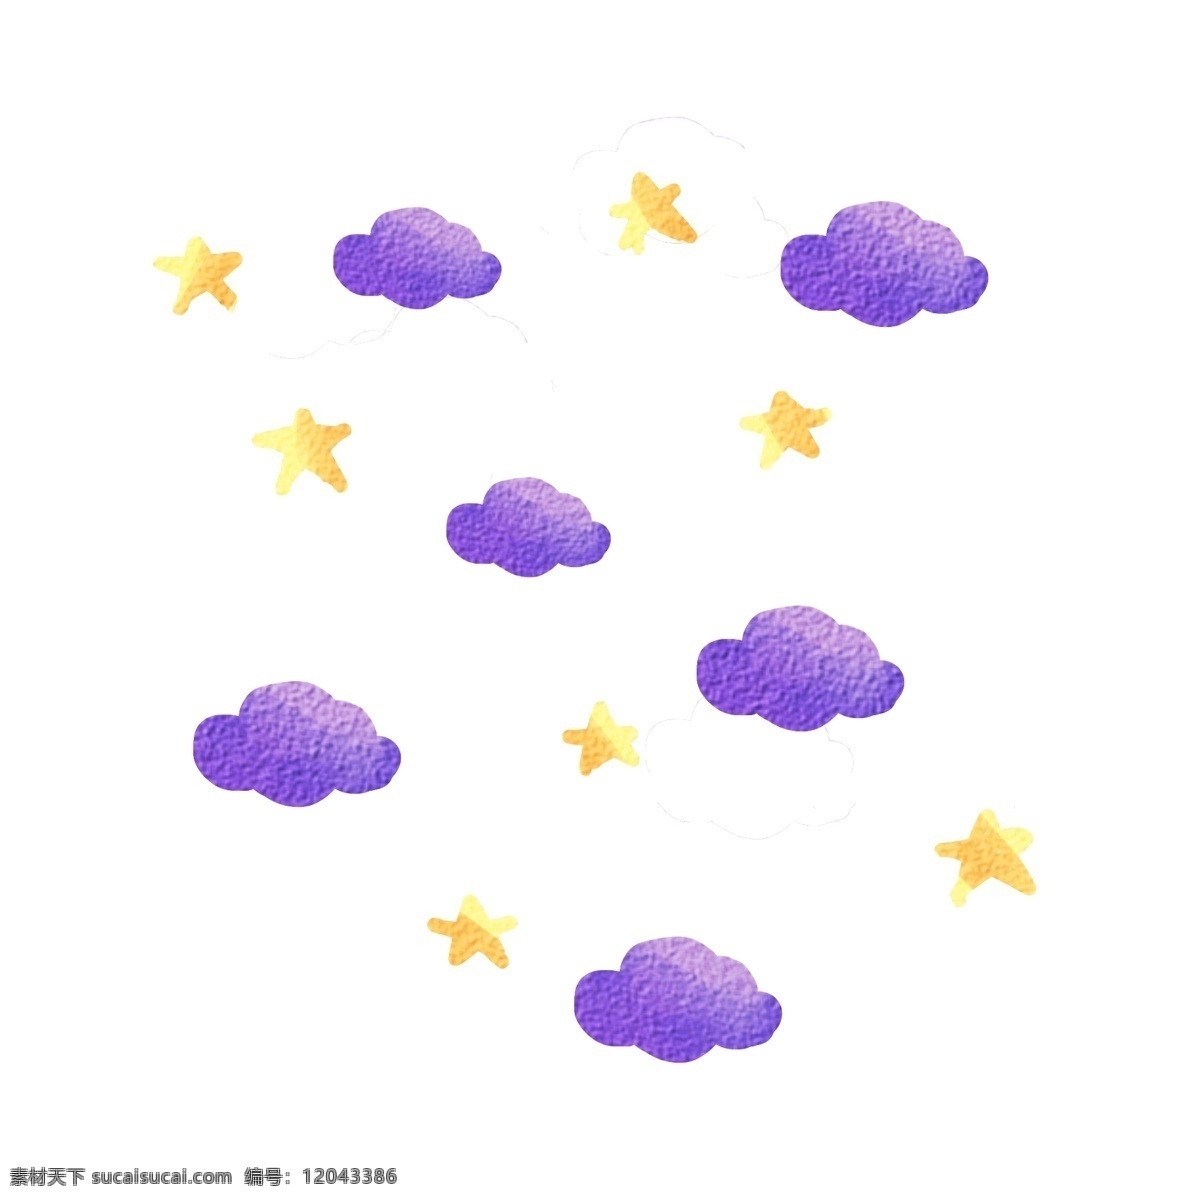 梦幻 星星 云朵 漂浮 装饰 温馨 可爱 浅色系 漂浮空中 水彩风格装饰 紫色云朵 黄色星星 温柔 天空